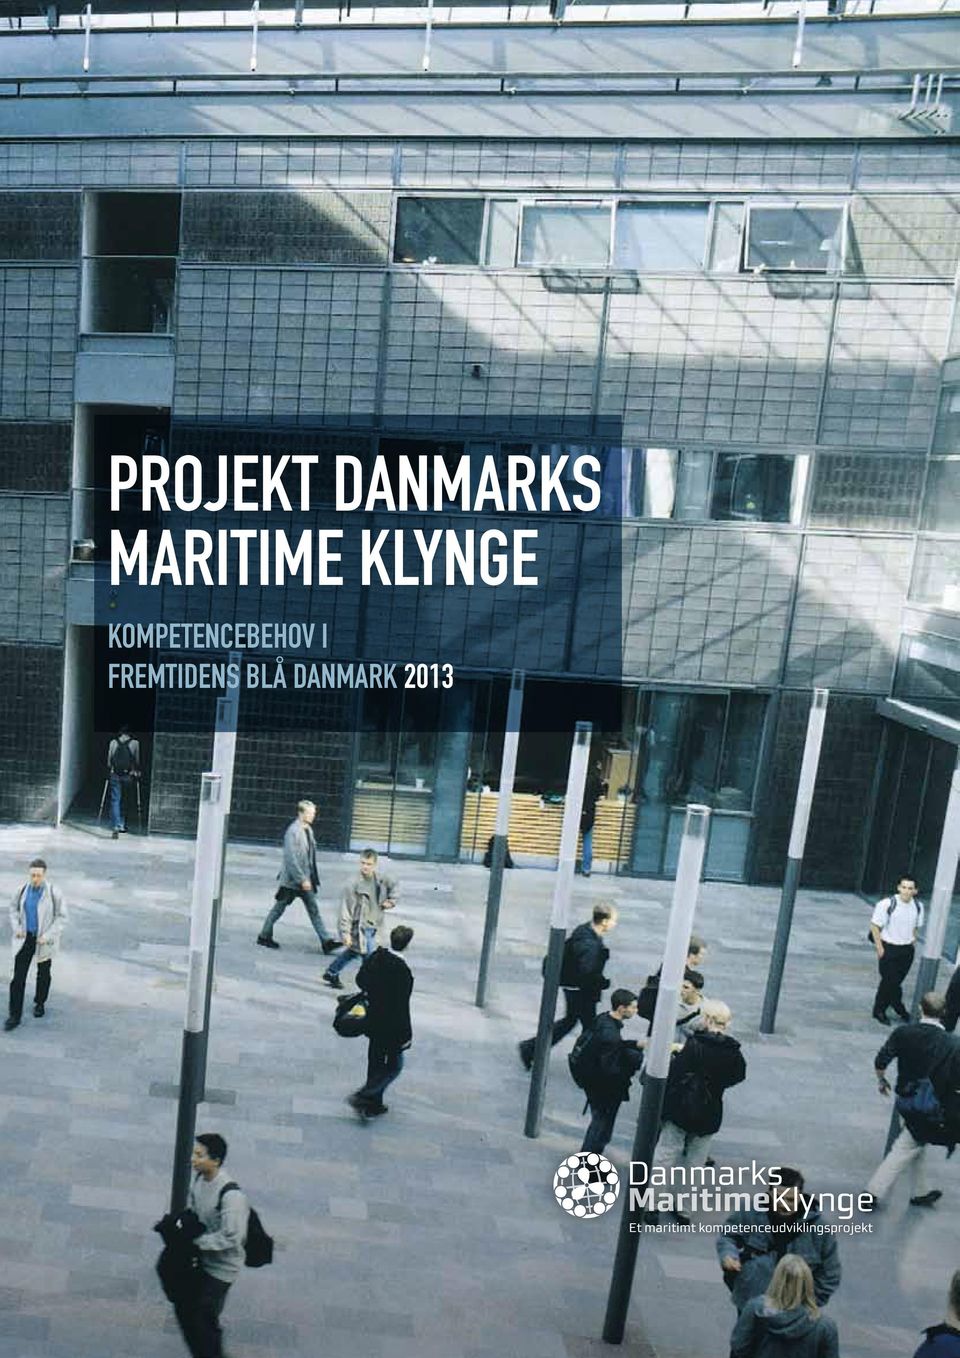 Analysen peger dog også på at de maritime erhverv i Danmark allerede i dag har visse udfordringer i forhold til at rekrut-tere kvalificeret arbejdskraft og at disse udfordringer kun vil vokse de